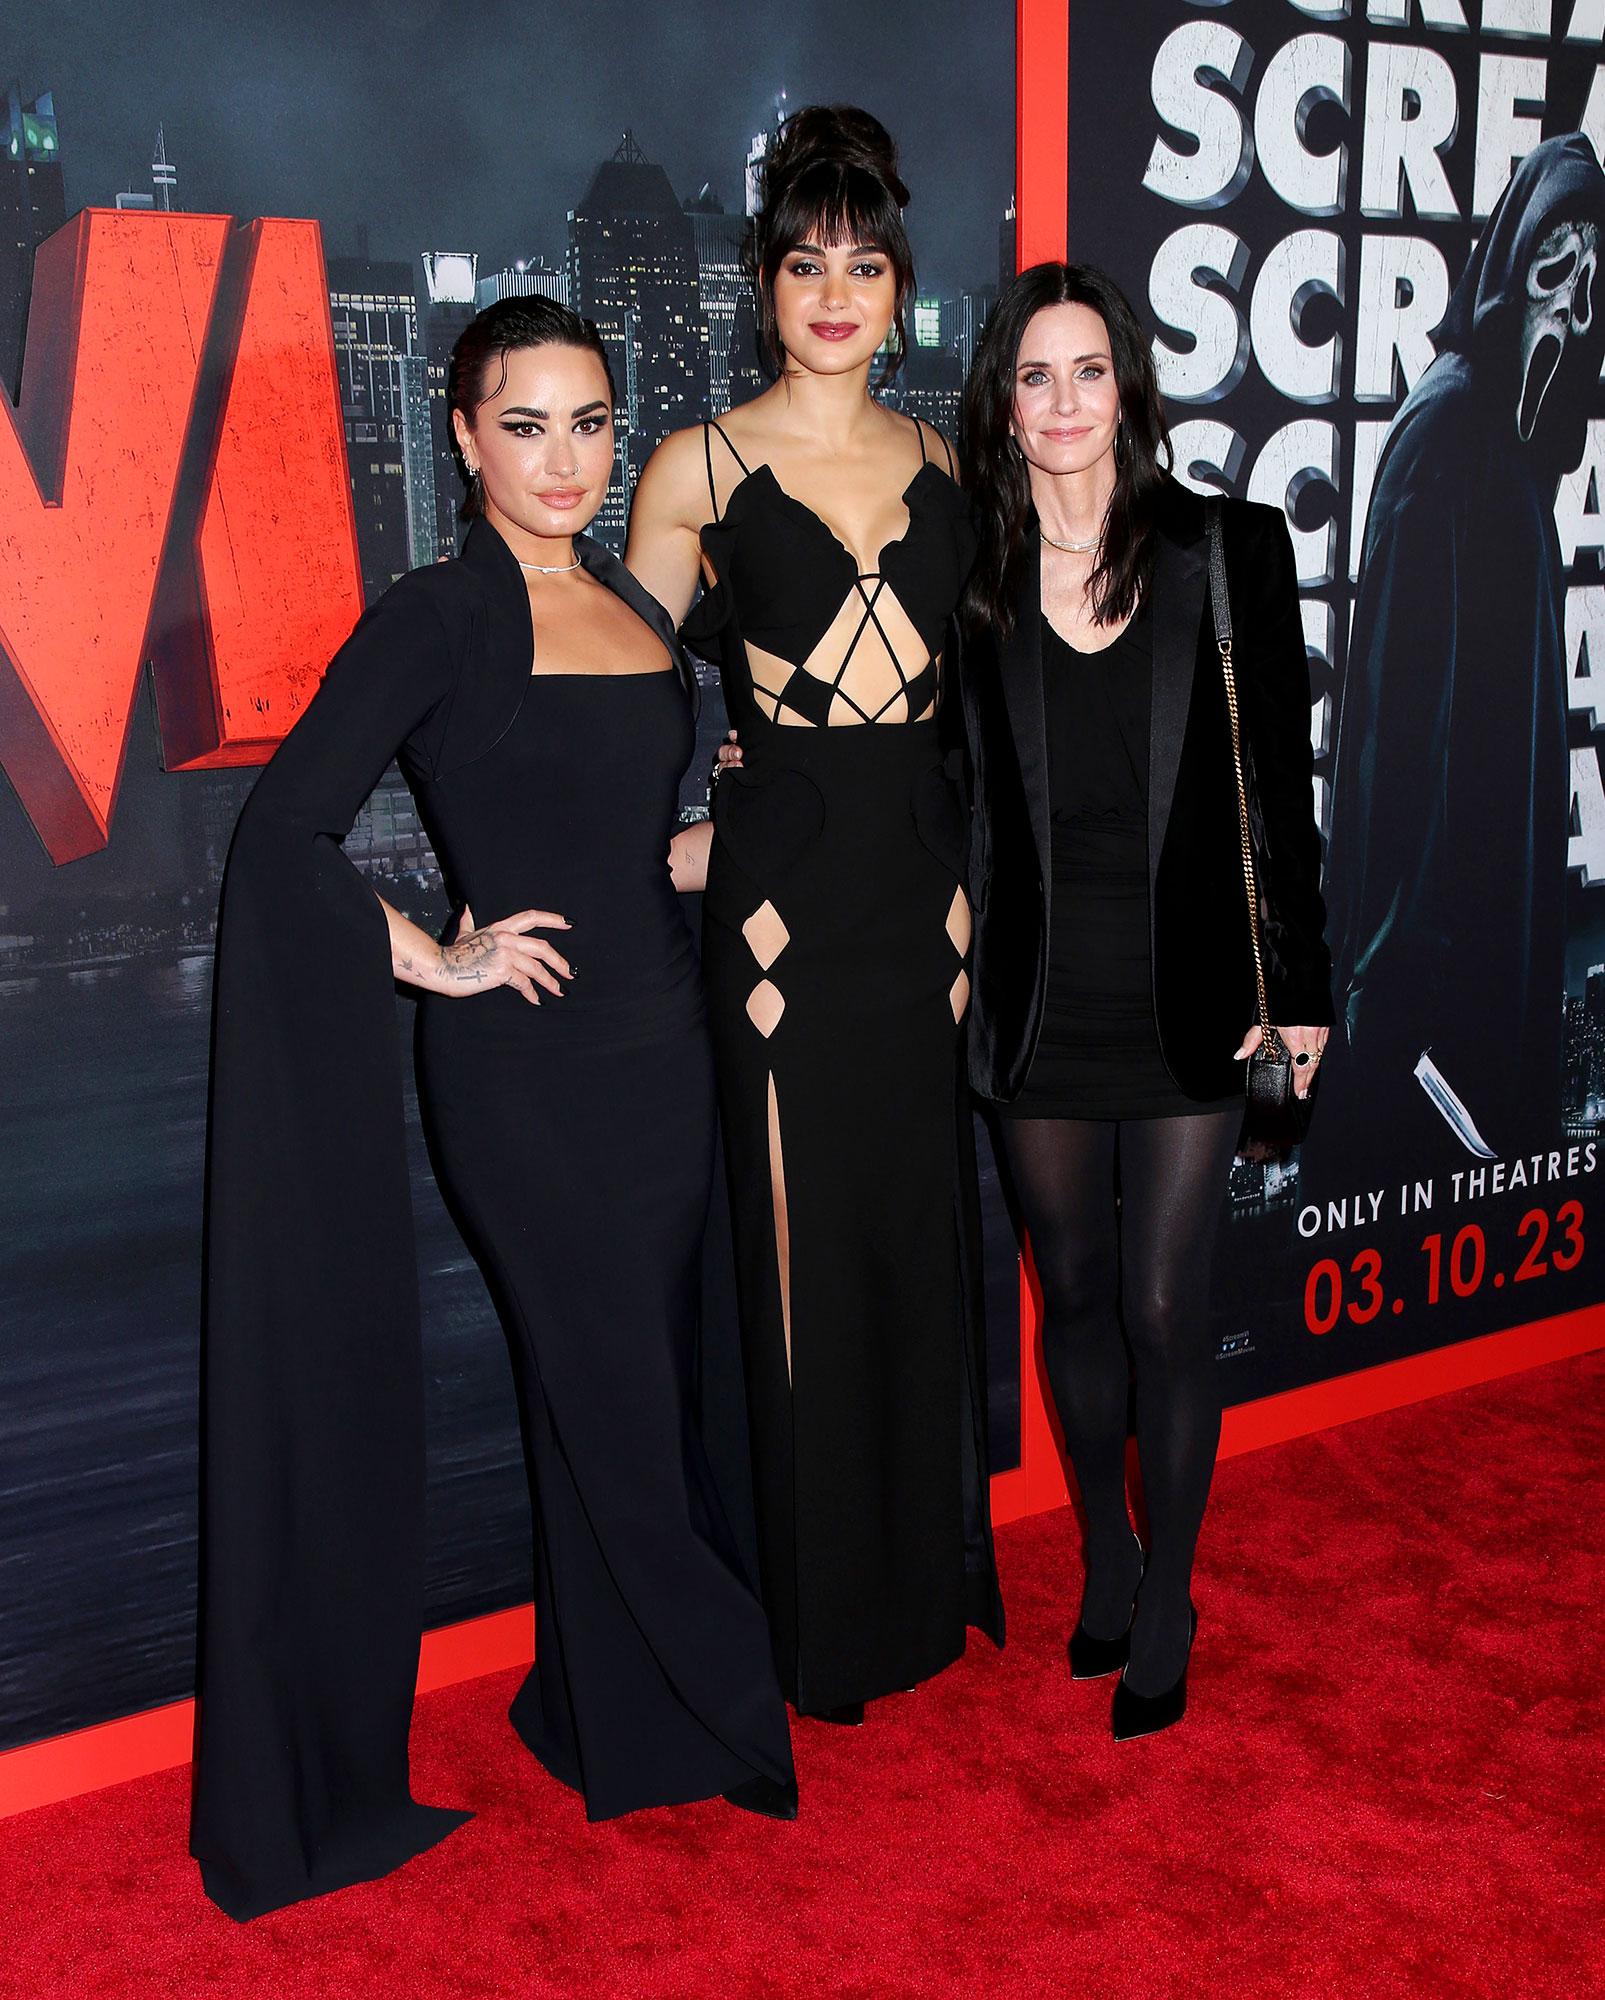 Scream 6' Premiere Red Carpet Cast Arrivals, Photos – Rvce News